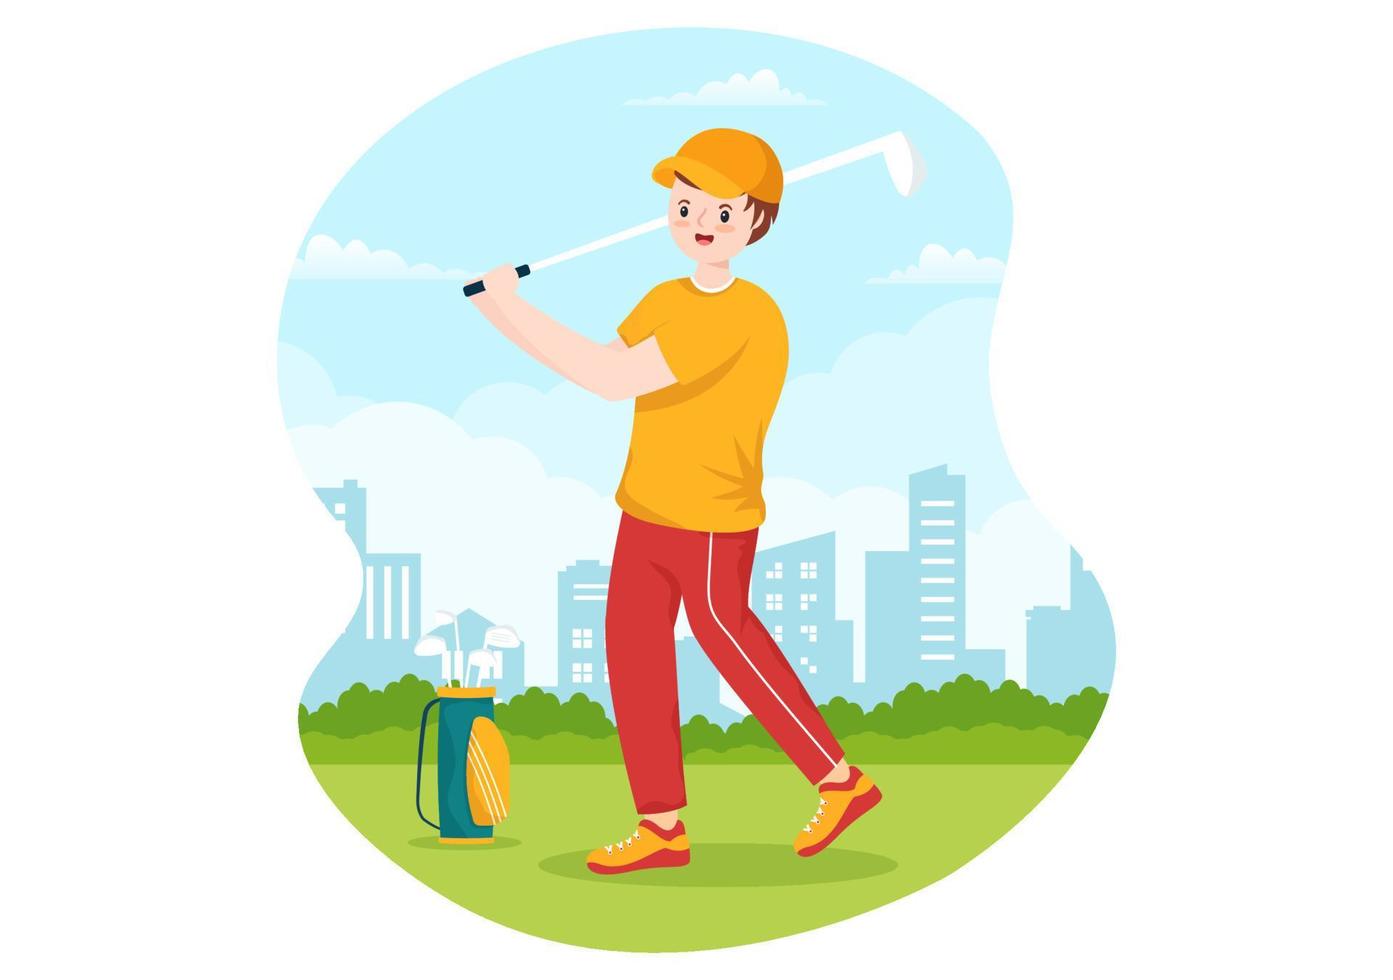 ilustración de deporte de golf con banderas, carro, palos, campo verde y búnker de arena para diversión al aire libre o estilo de vida en plantillas planas dibujadas a mano vector